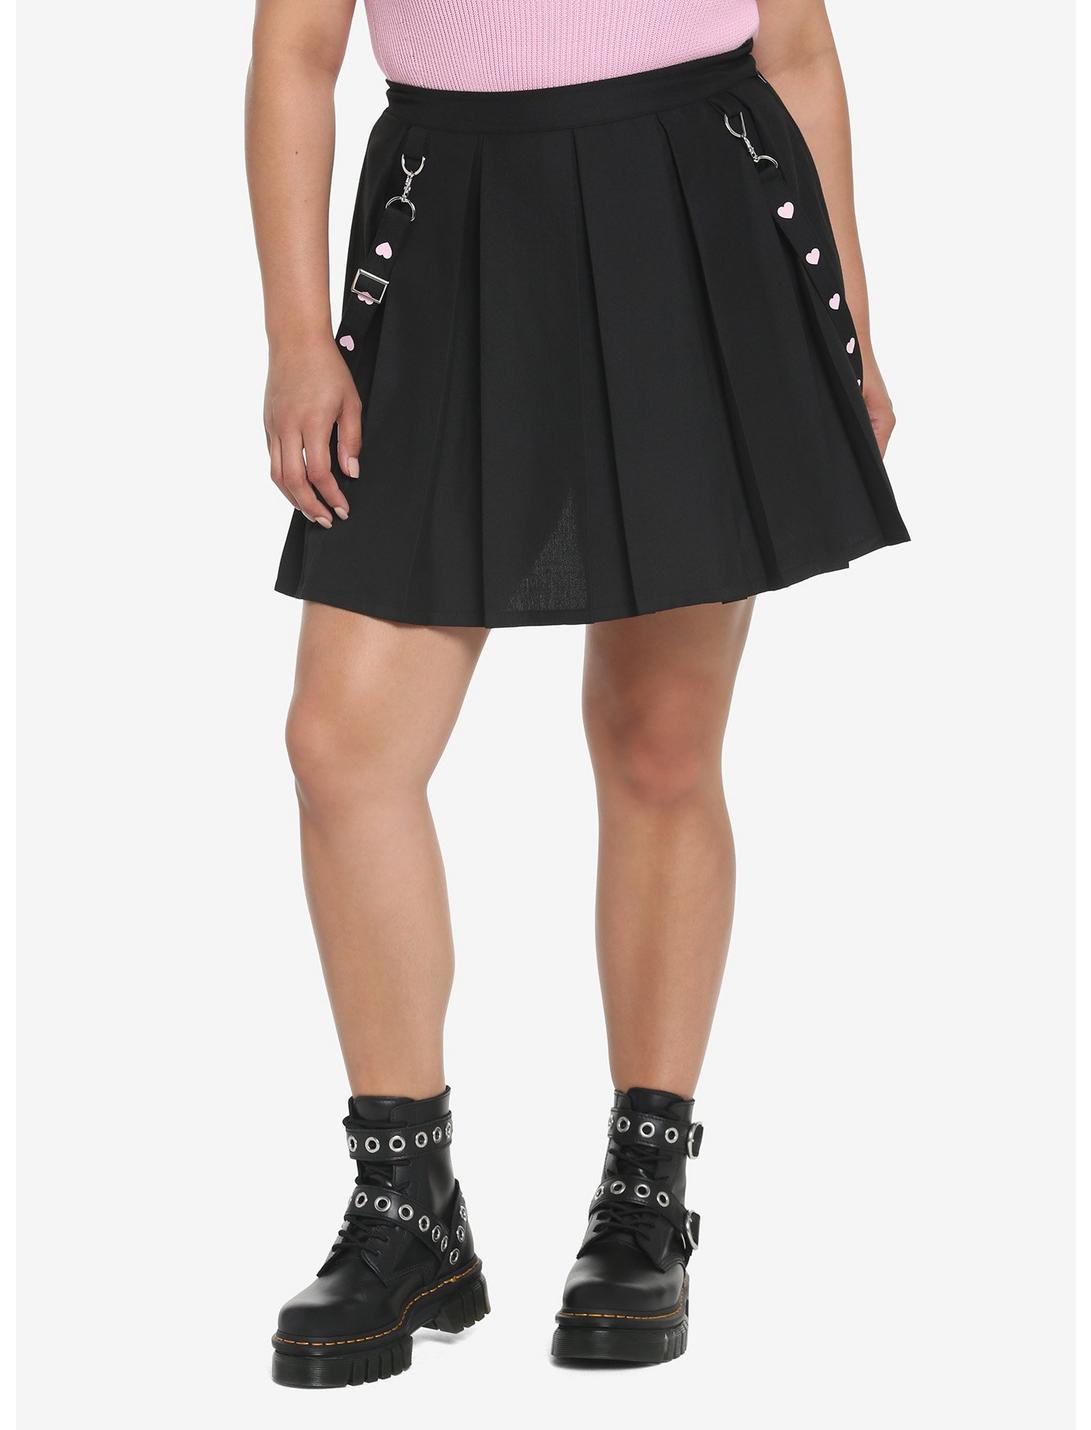 Black & Pink Hearts Suspender Skirt Plus Size, BLACK, hi-res